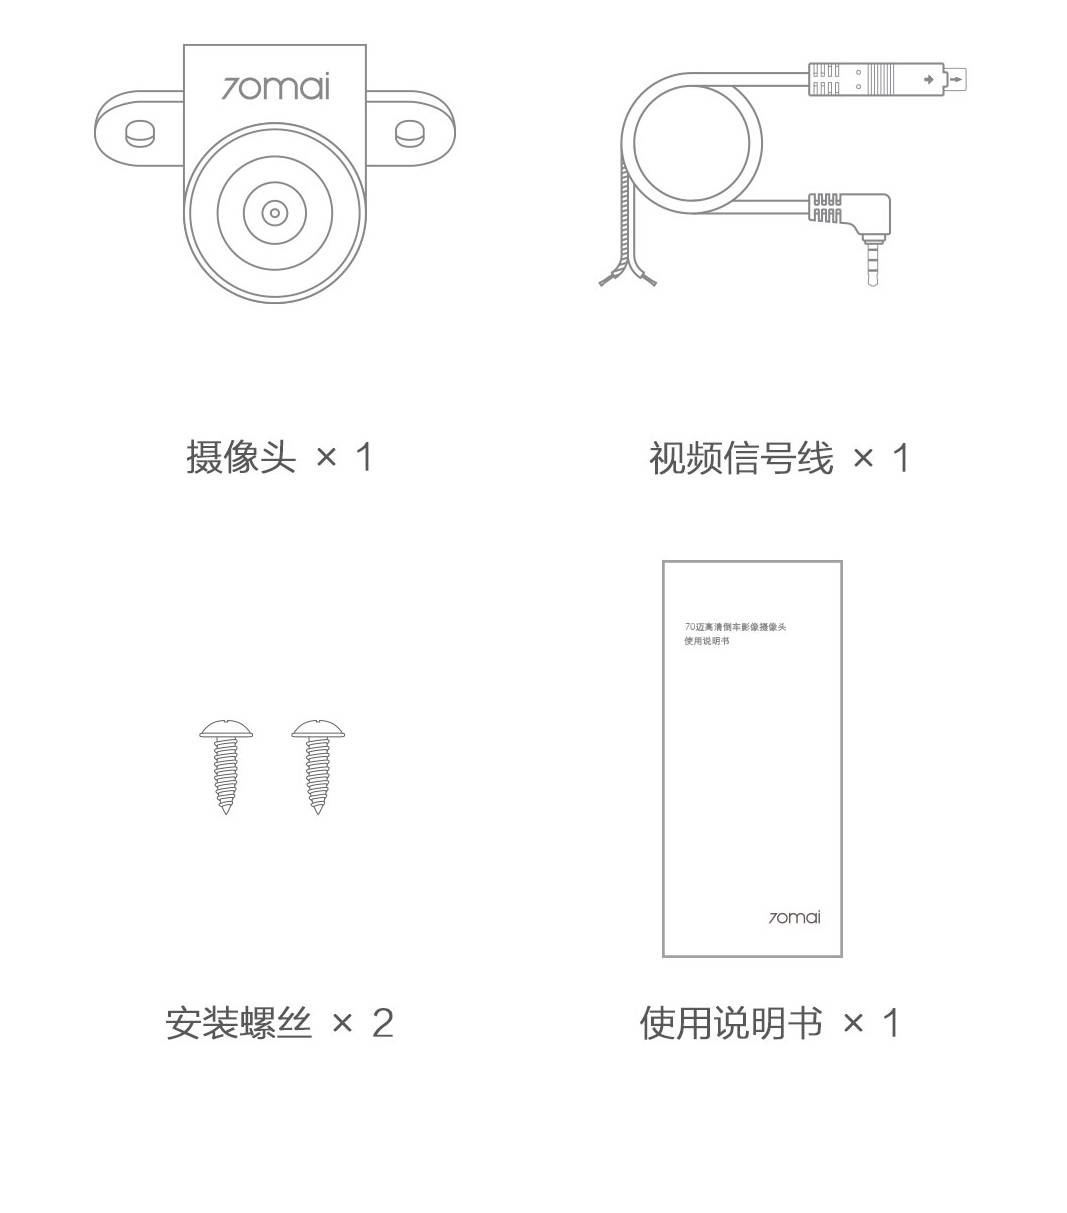 Xiaomi column 2 mirror dvr